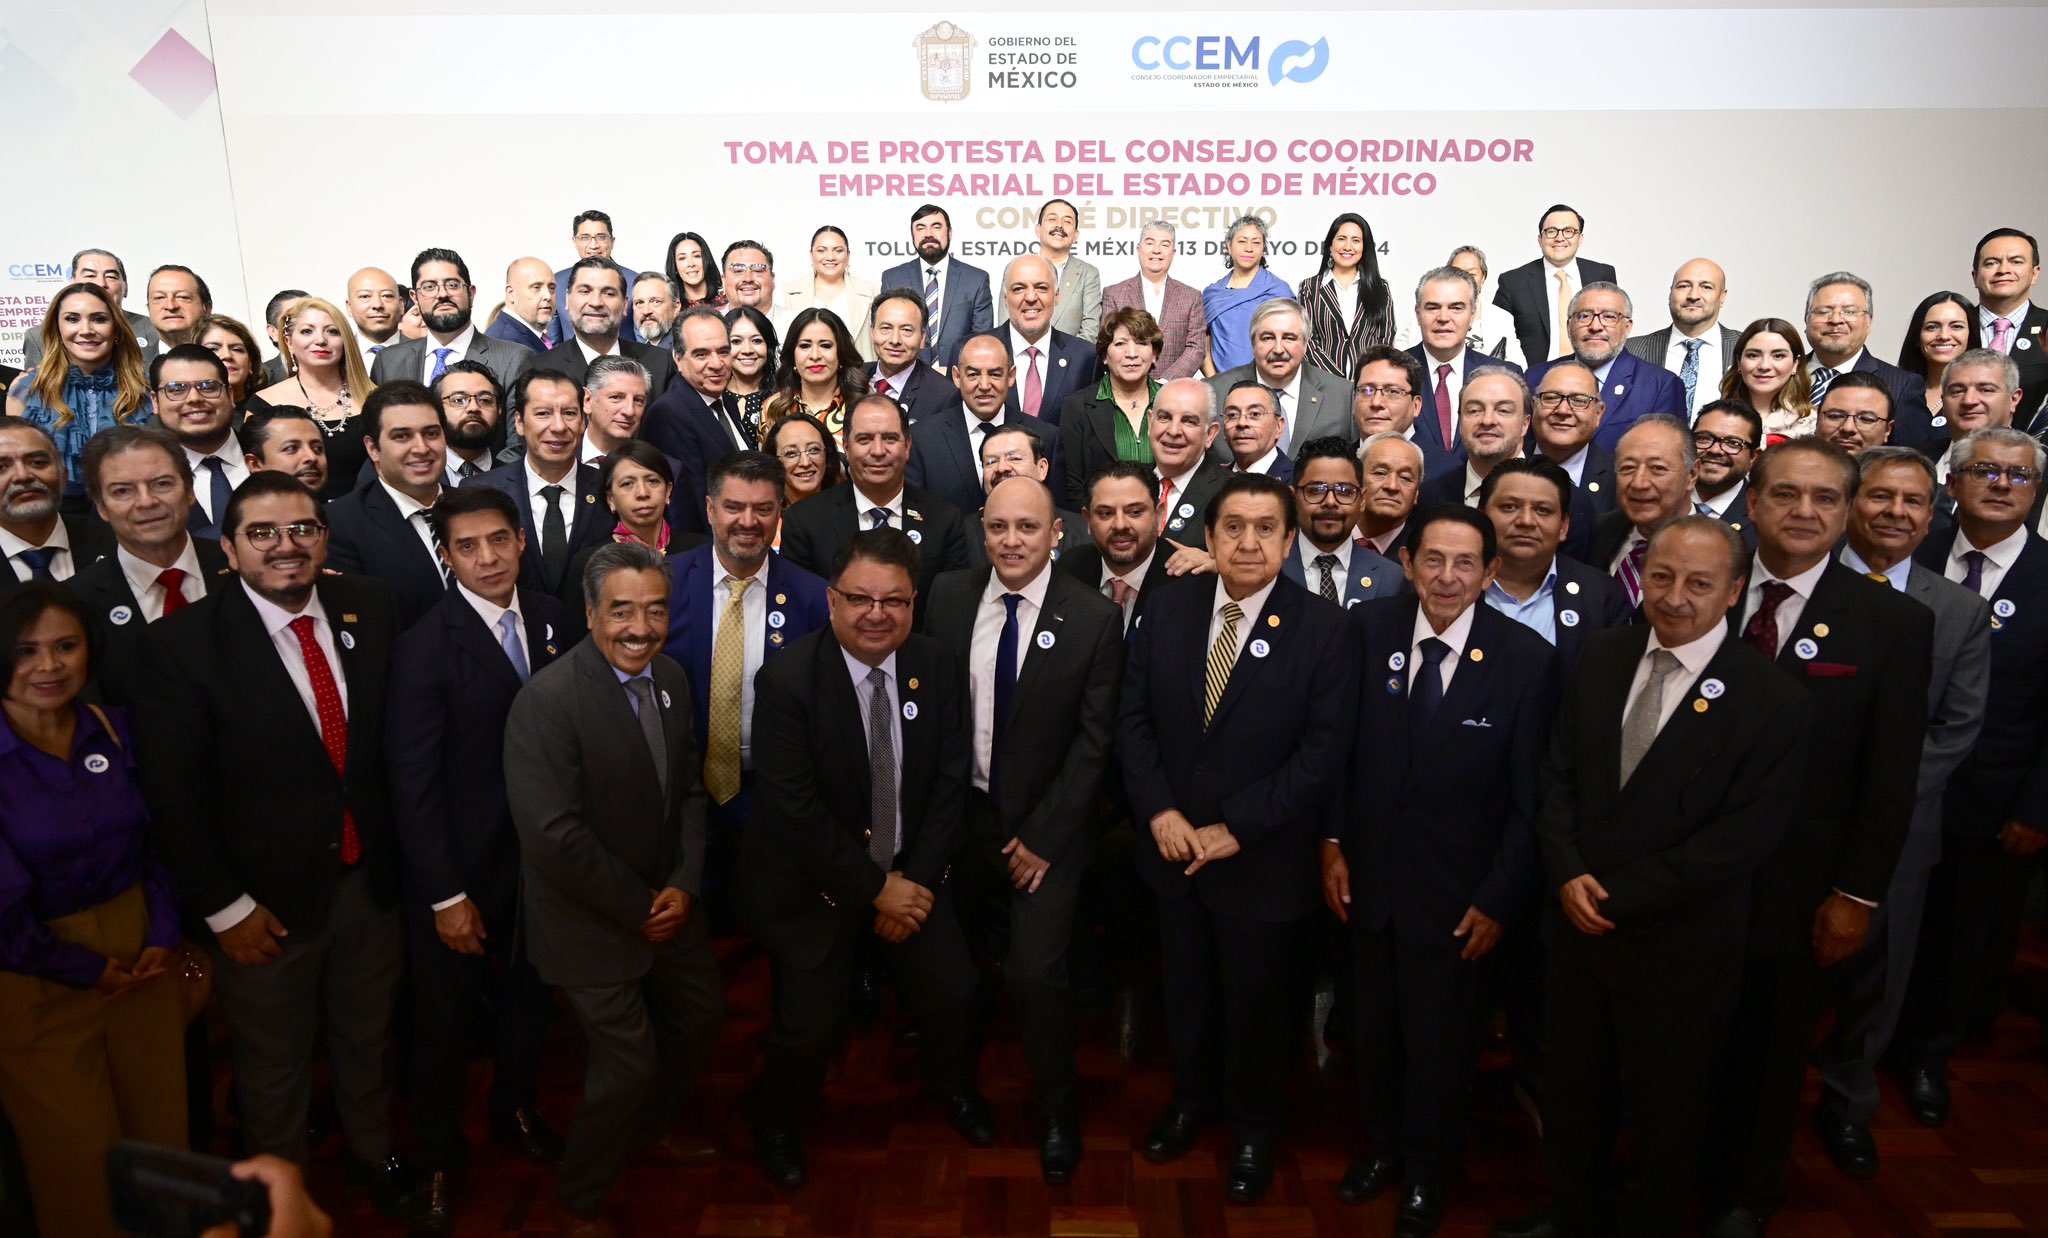 GEM y Consejo Coordinador Empresarial EdoMéx, fortalecen lazos de colaboración